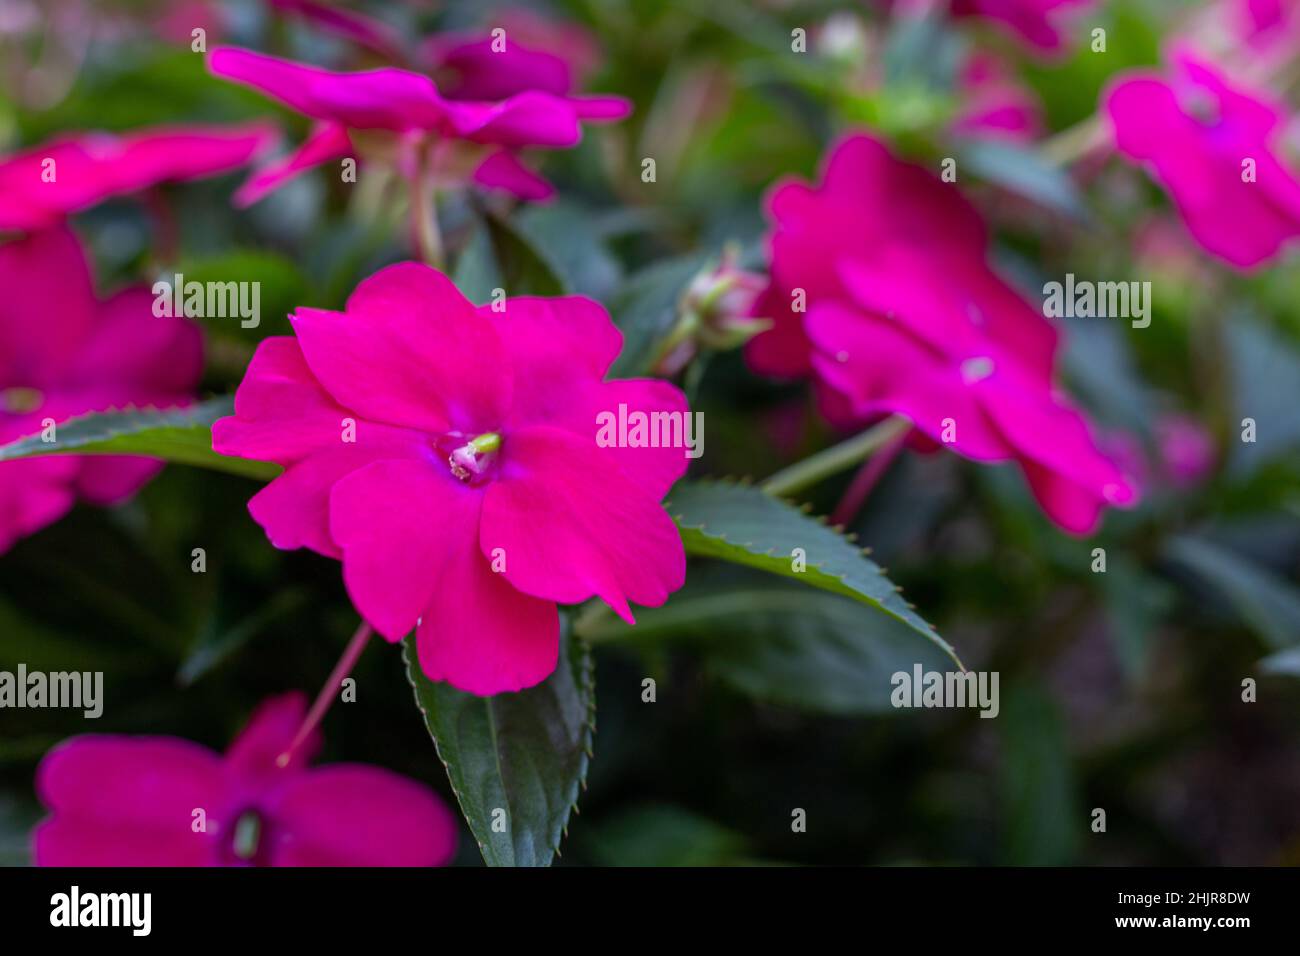 Rosa Impatiens fiori in fiore all'aperto in giardino, primo piano Foto Stock